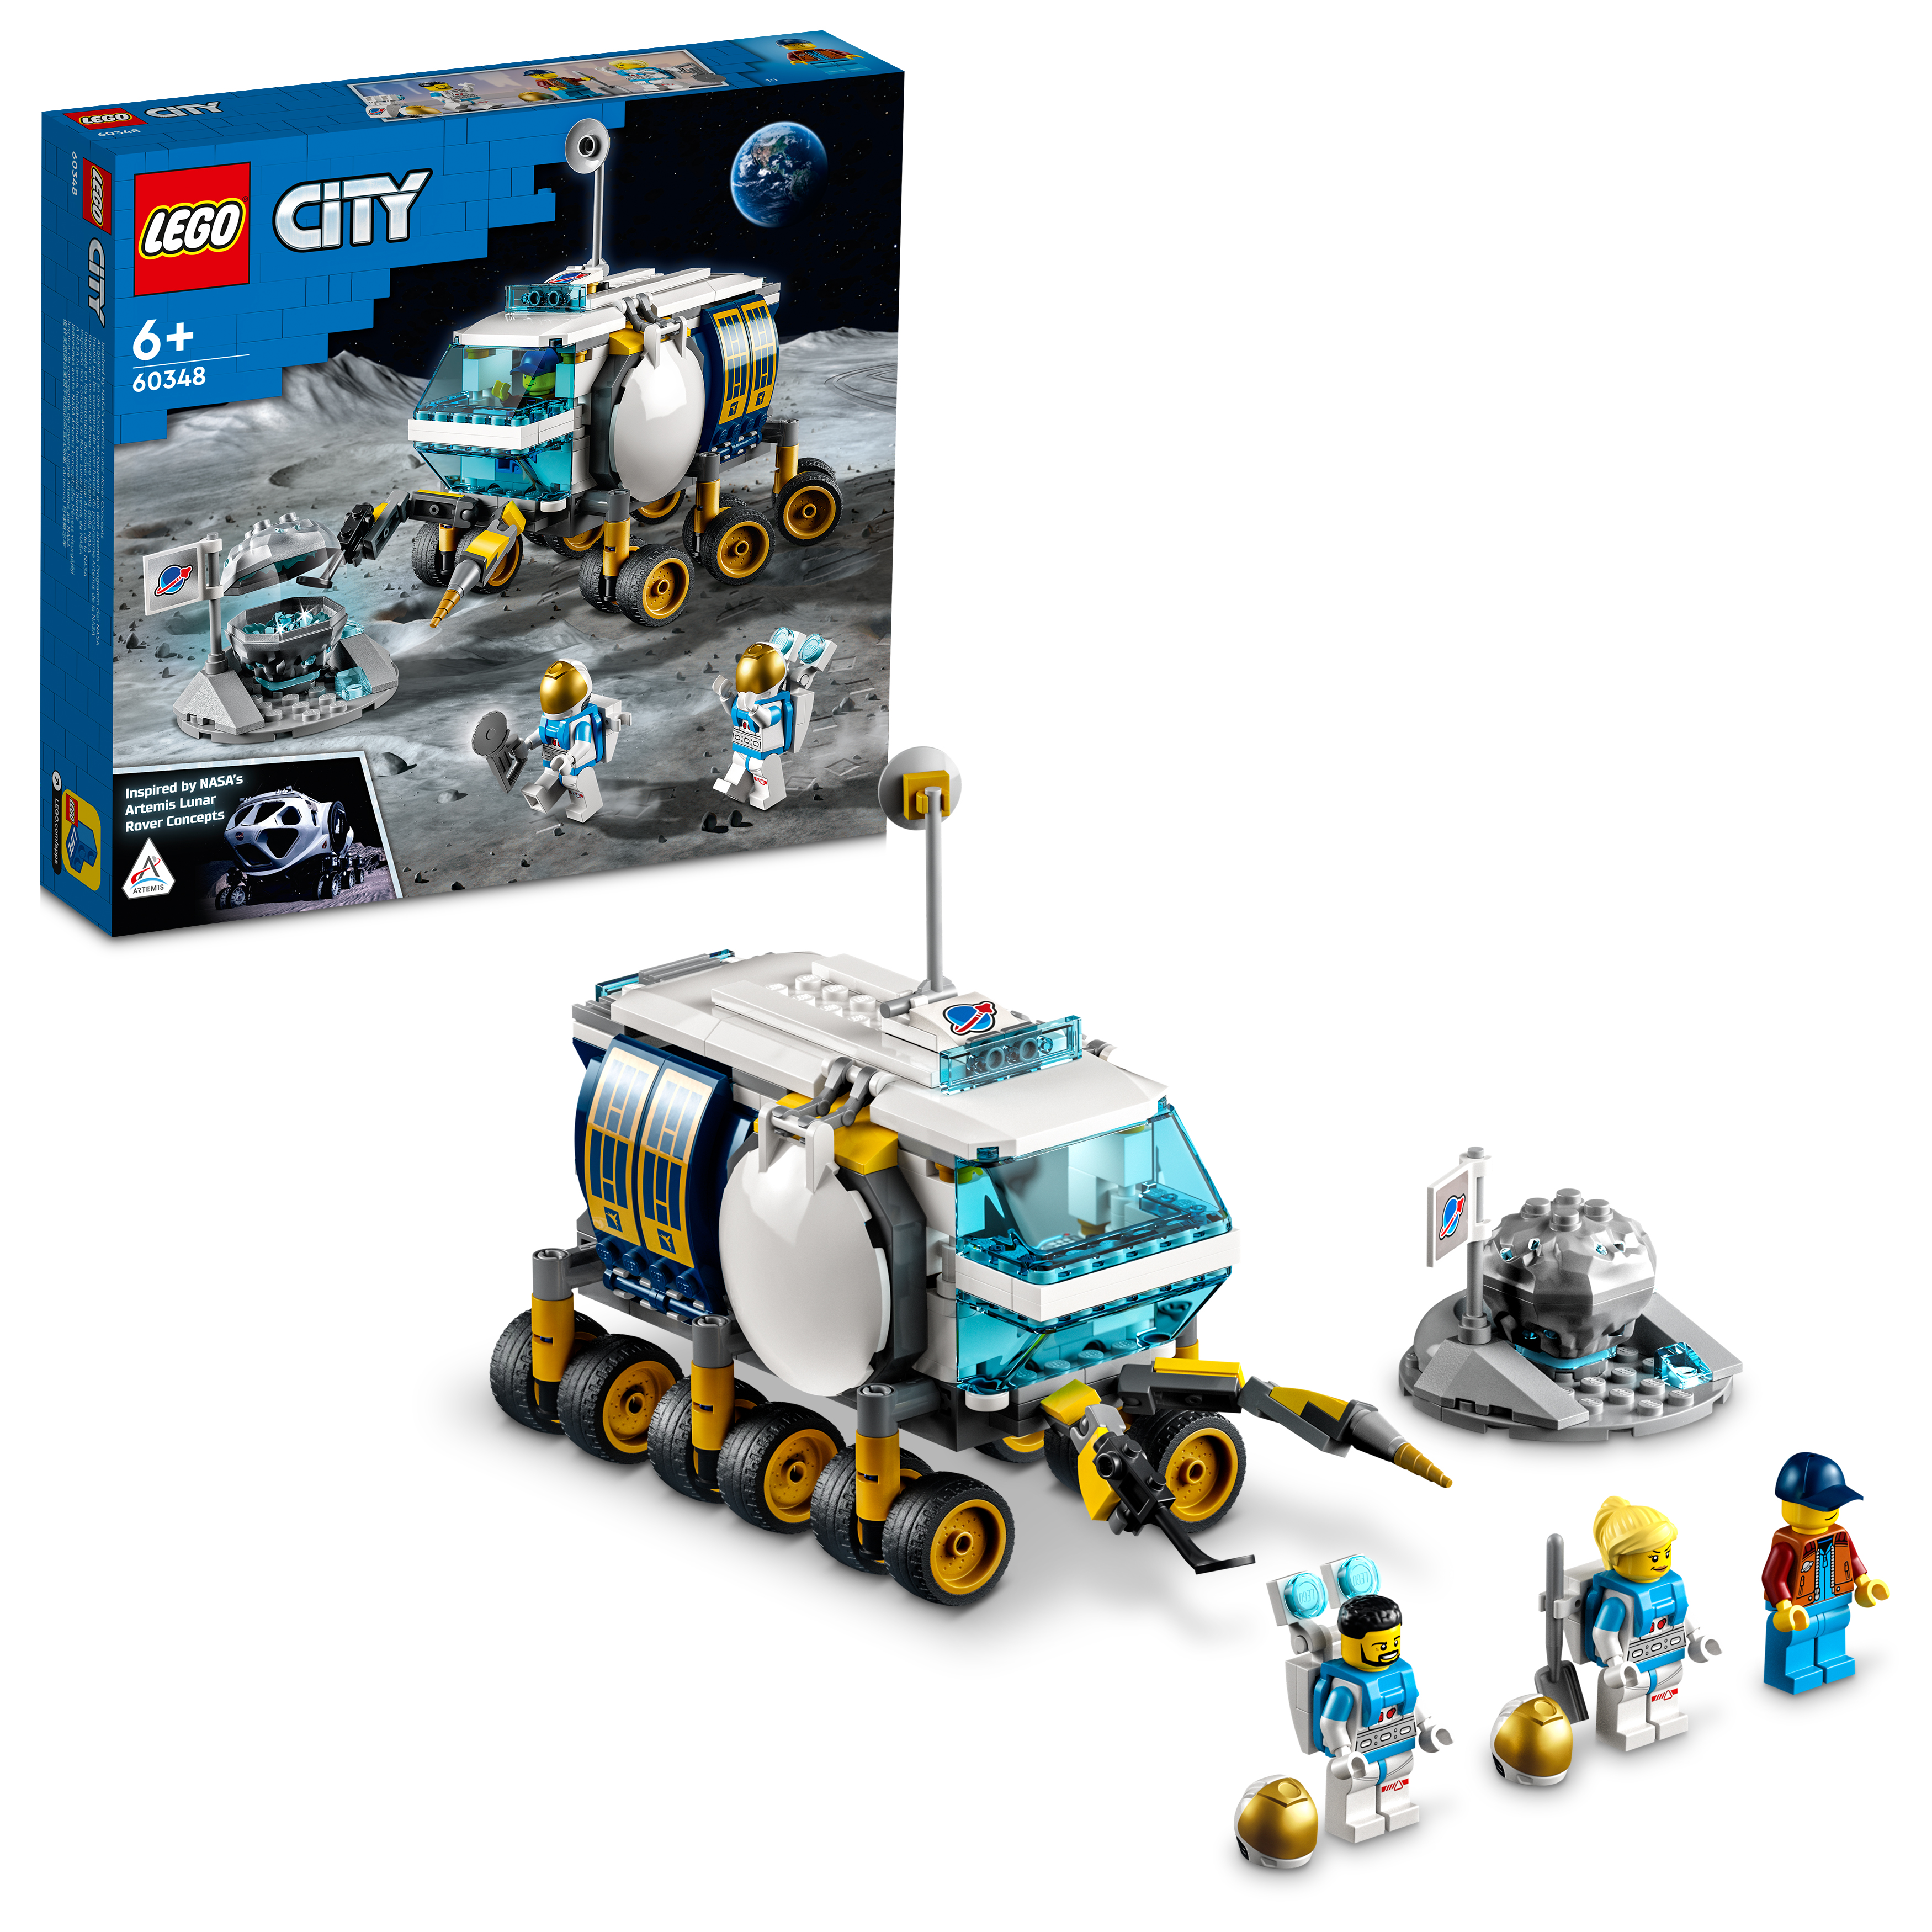 「レゴ®シティ 月面探査車 60348」画像